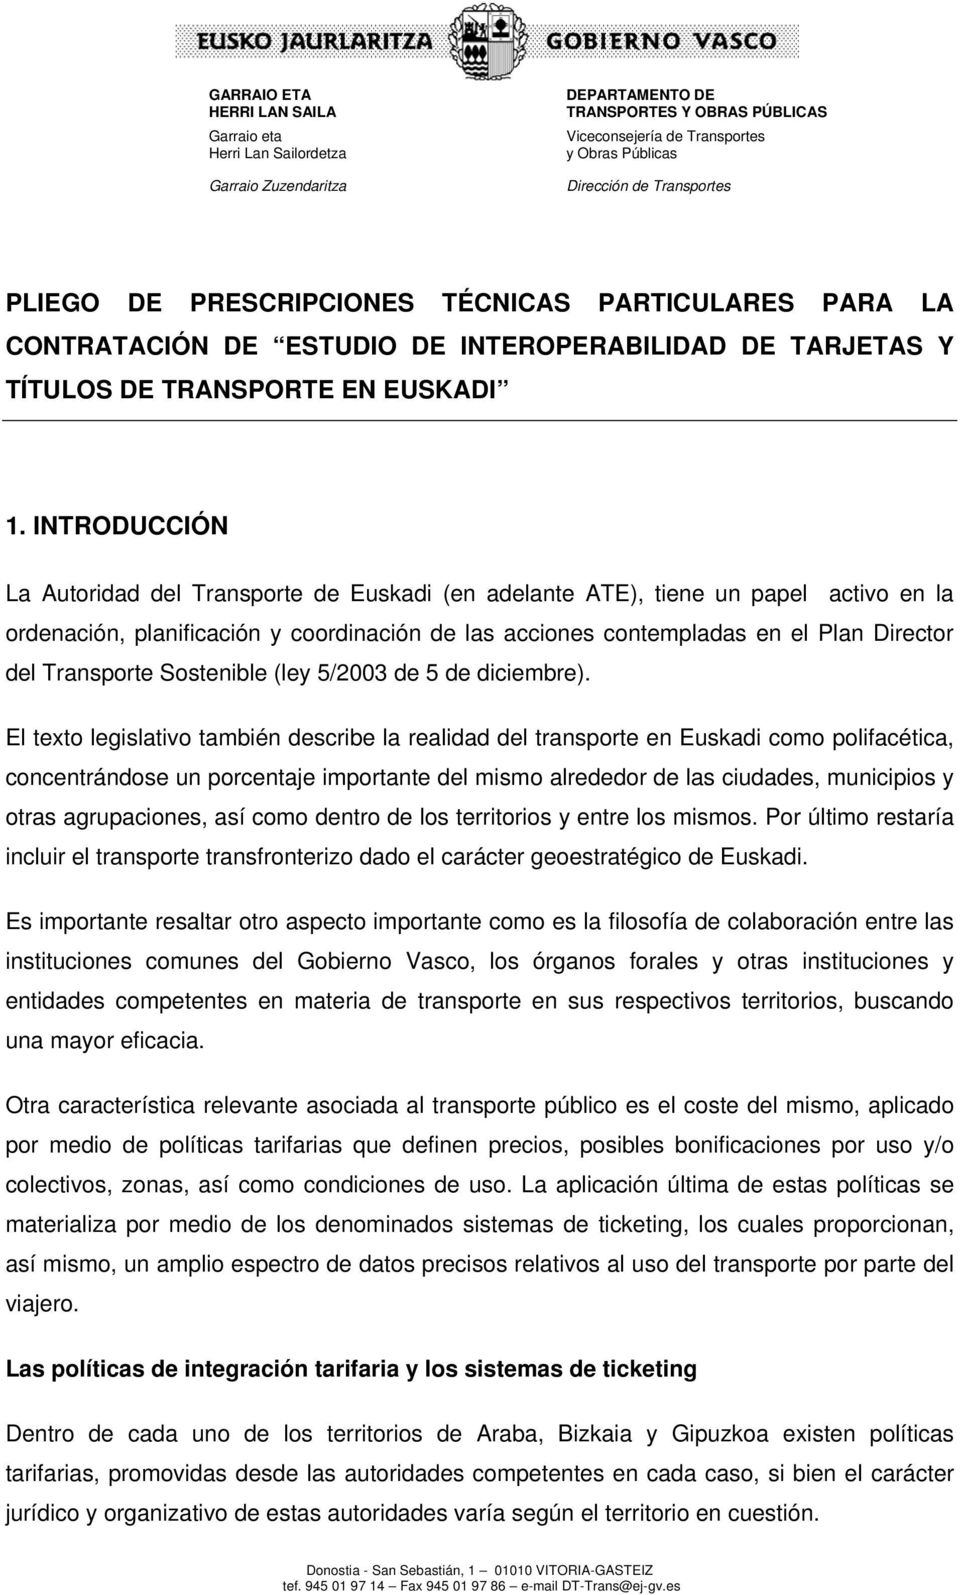 INTRODUCCIÓN La Autoridad del Transporte de Euskadi (en adelante ATE), tiene un papel activo en la ordenación, planificación y coordinación de las acciones contempladas en el Plan Director del